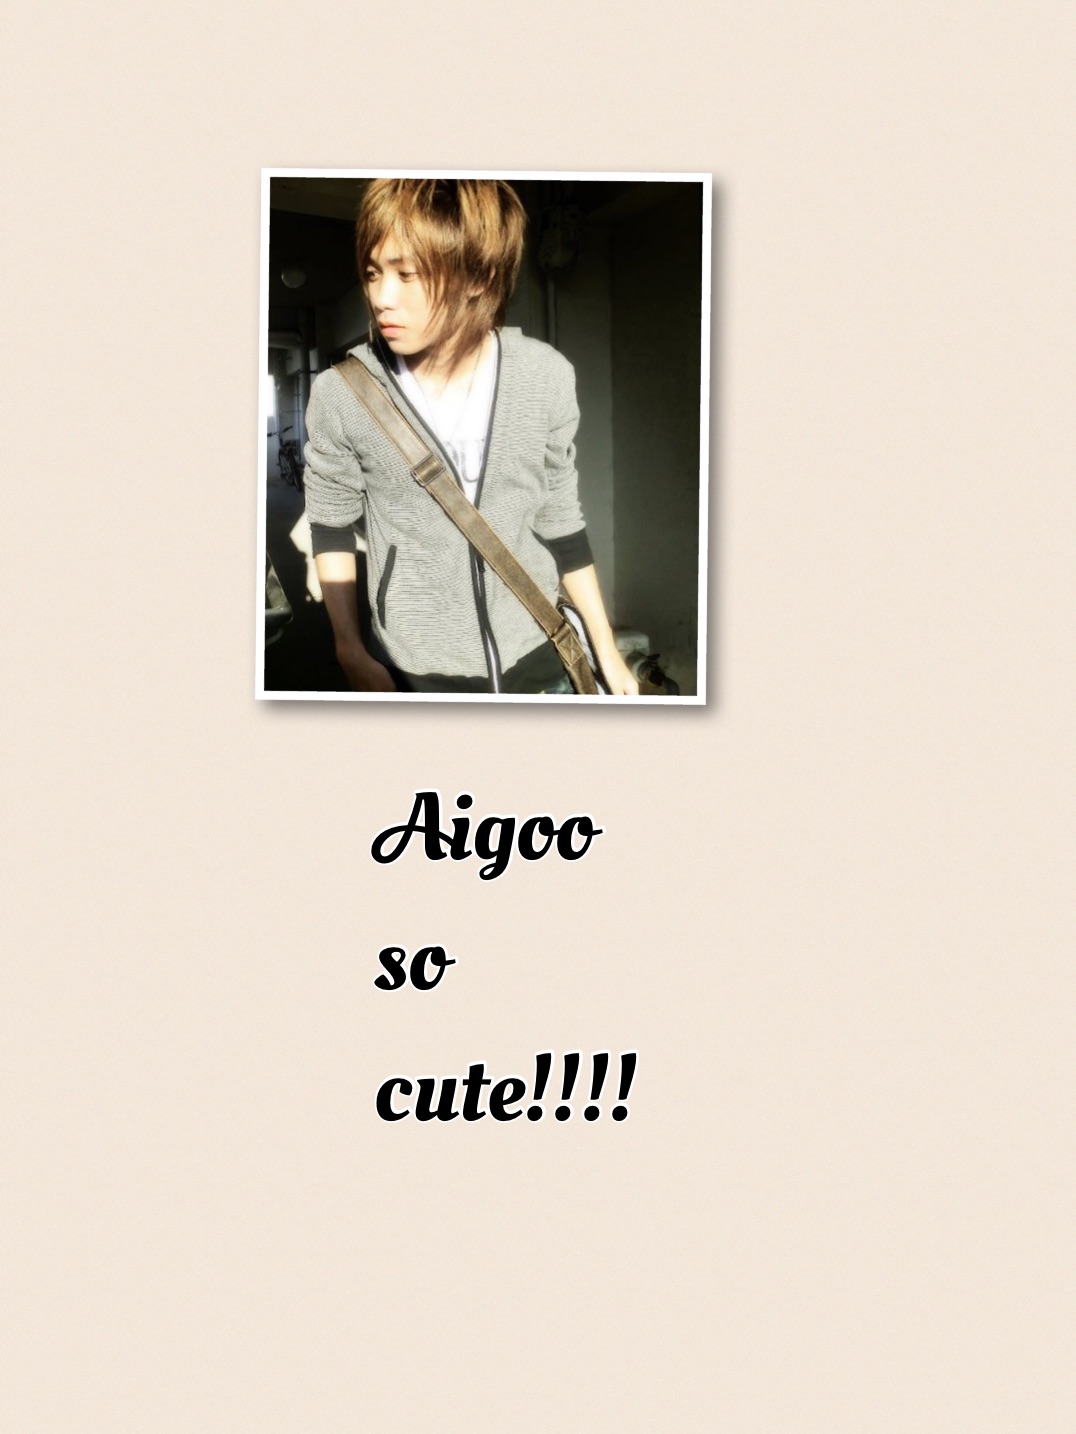 Aigoo so cute!!!!